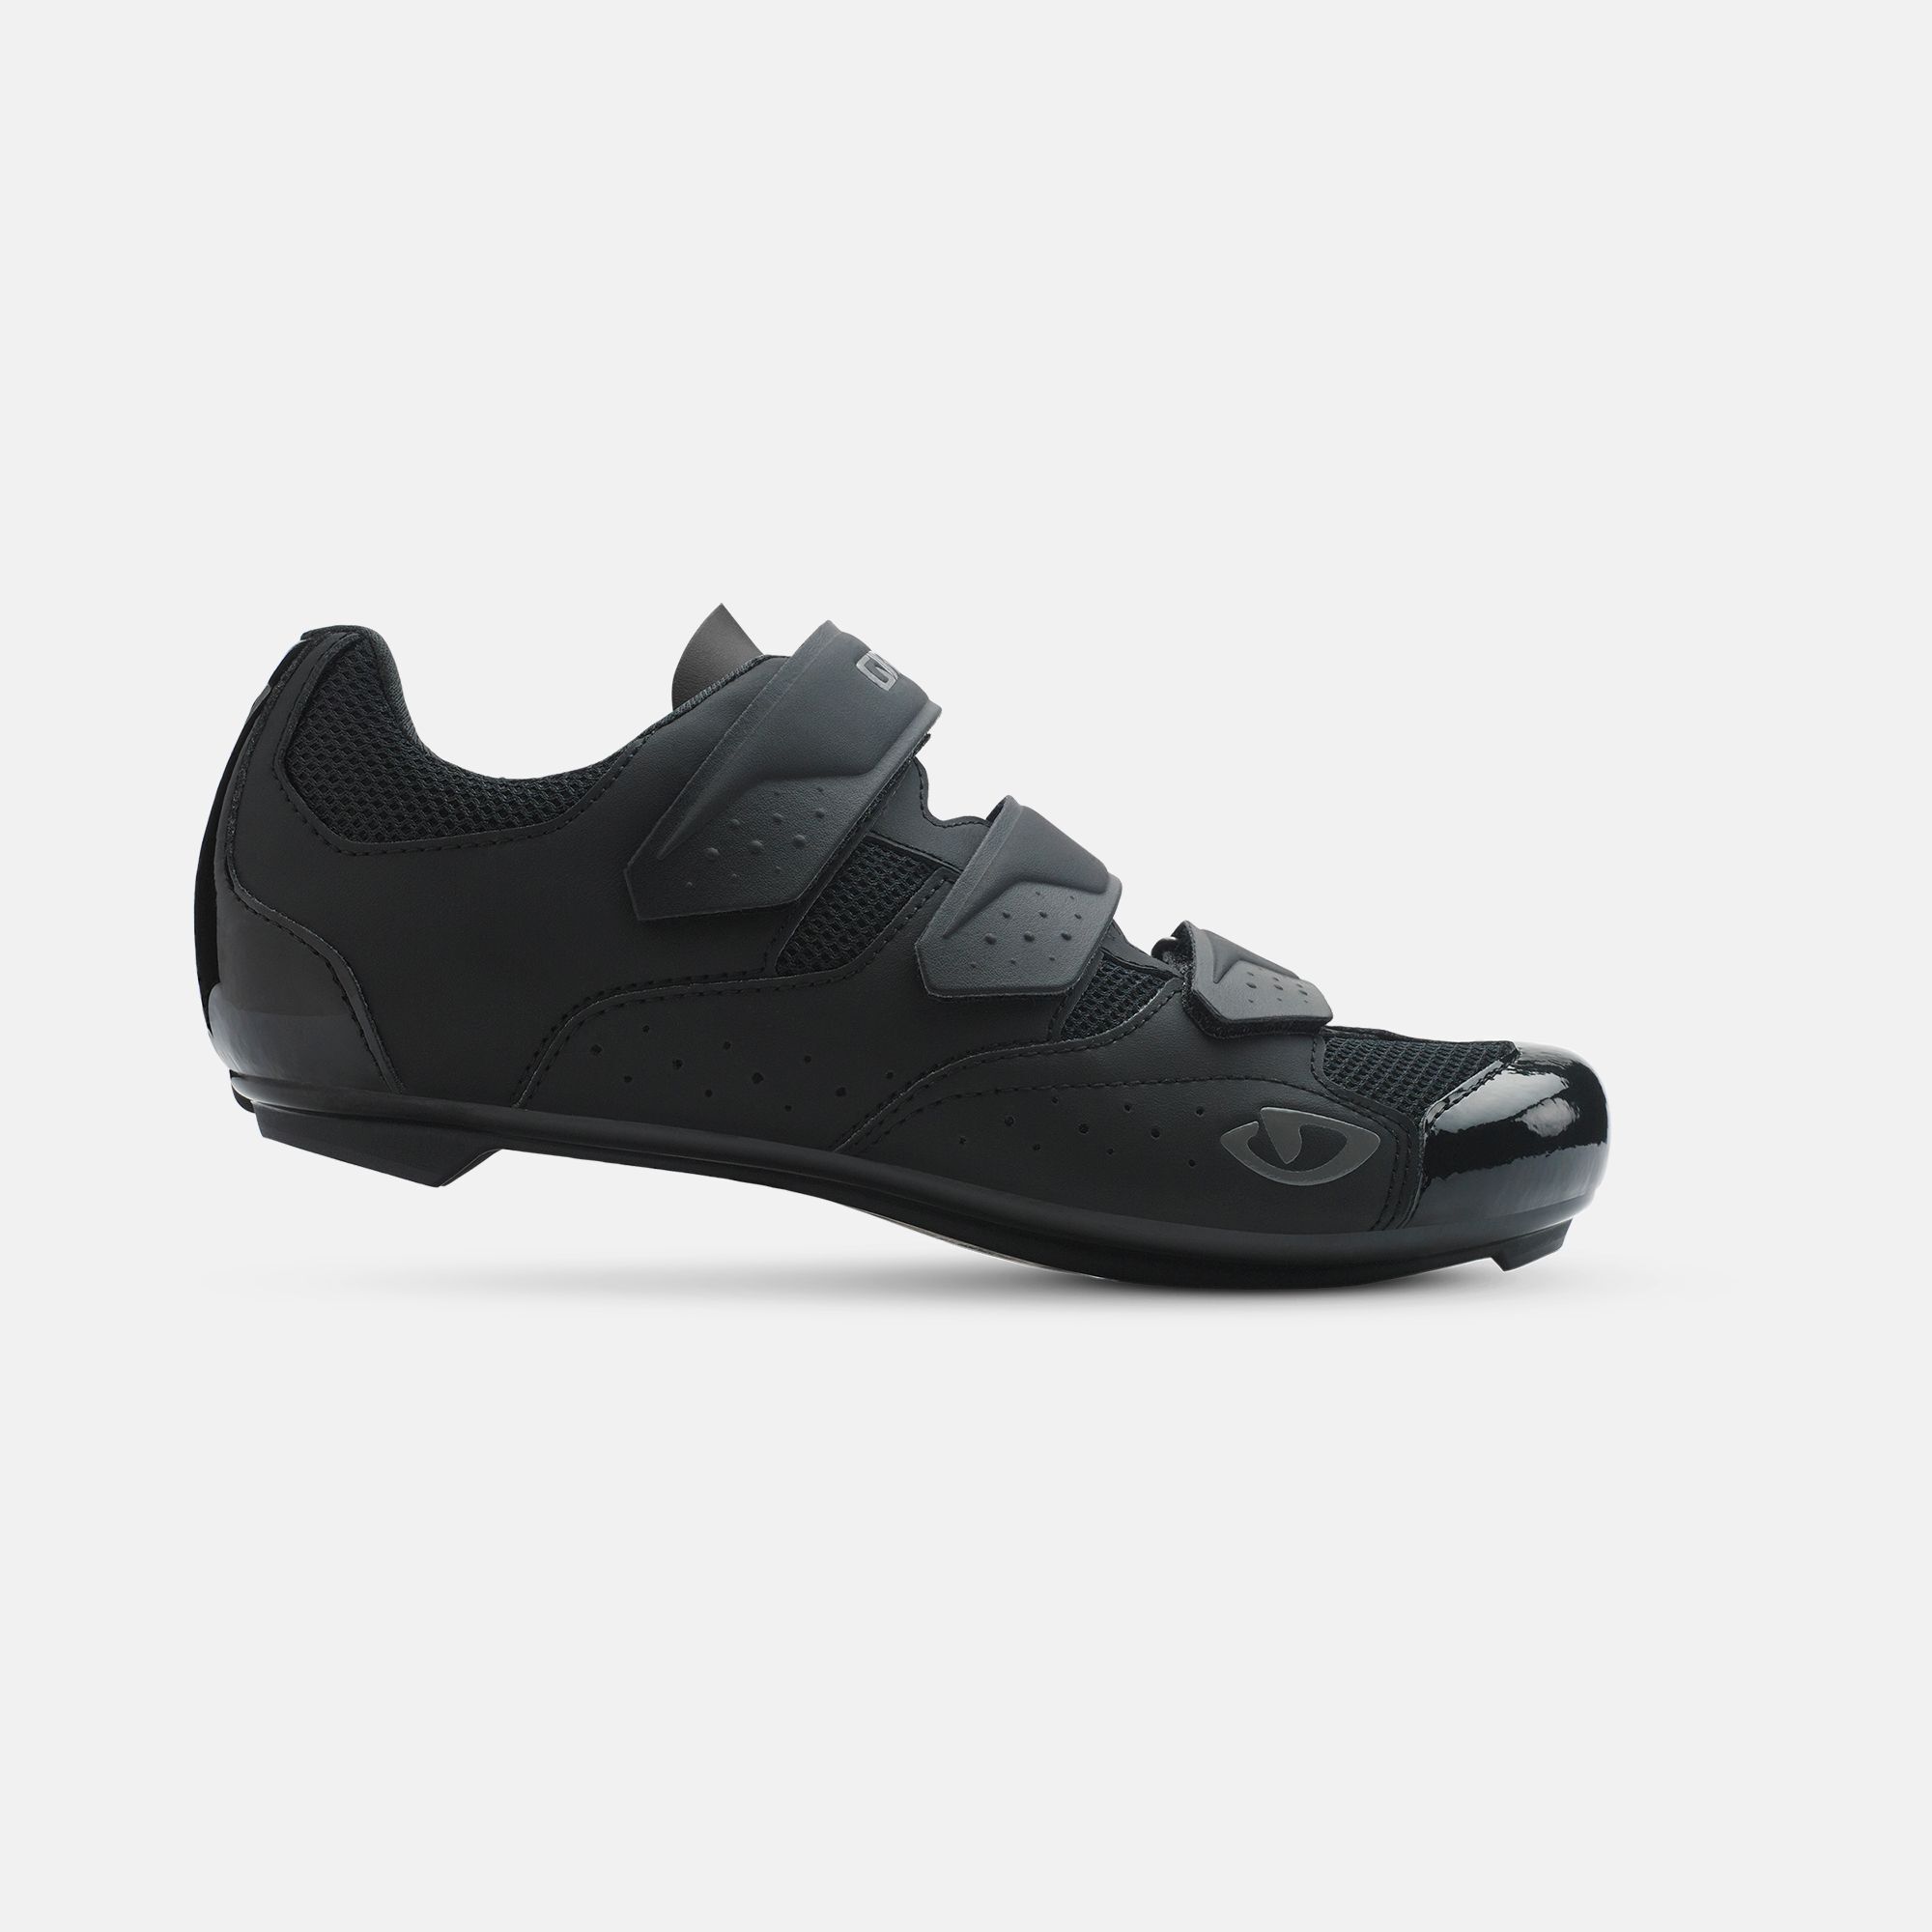 Techne Shoe | Giro